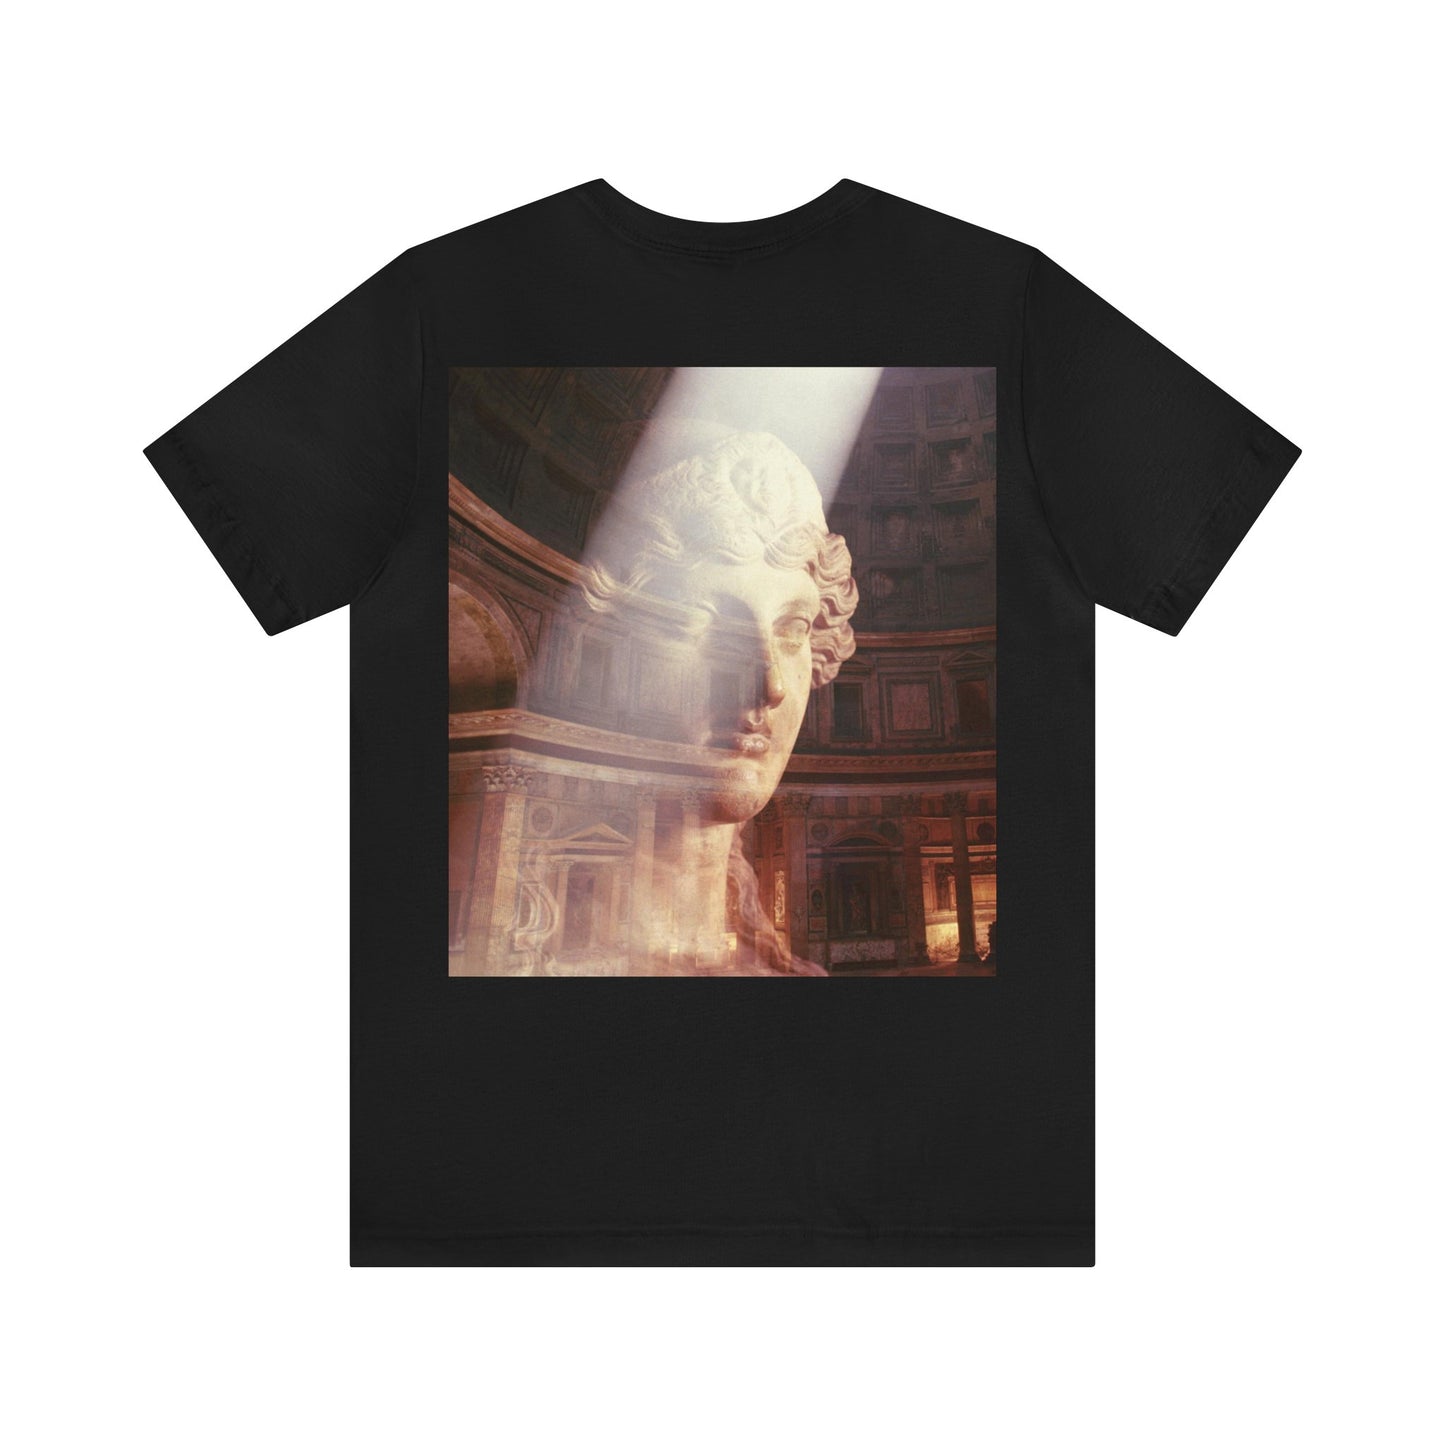 The Pantheon Tee Shirt